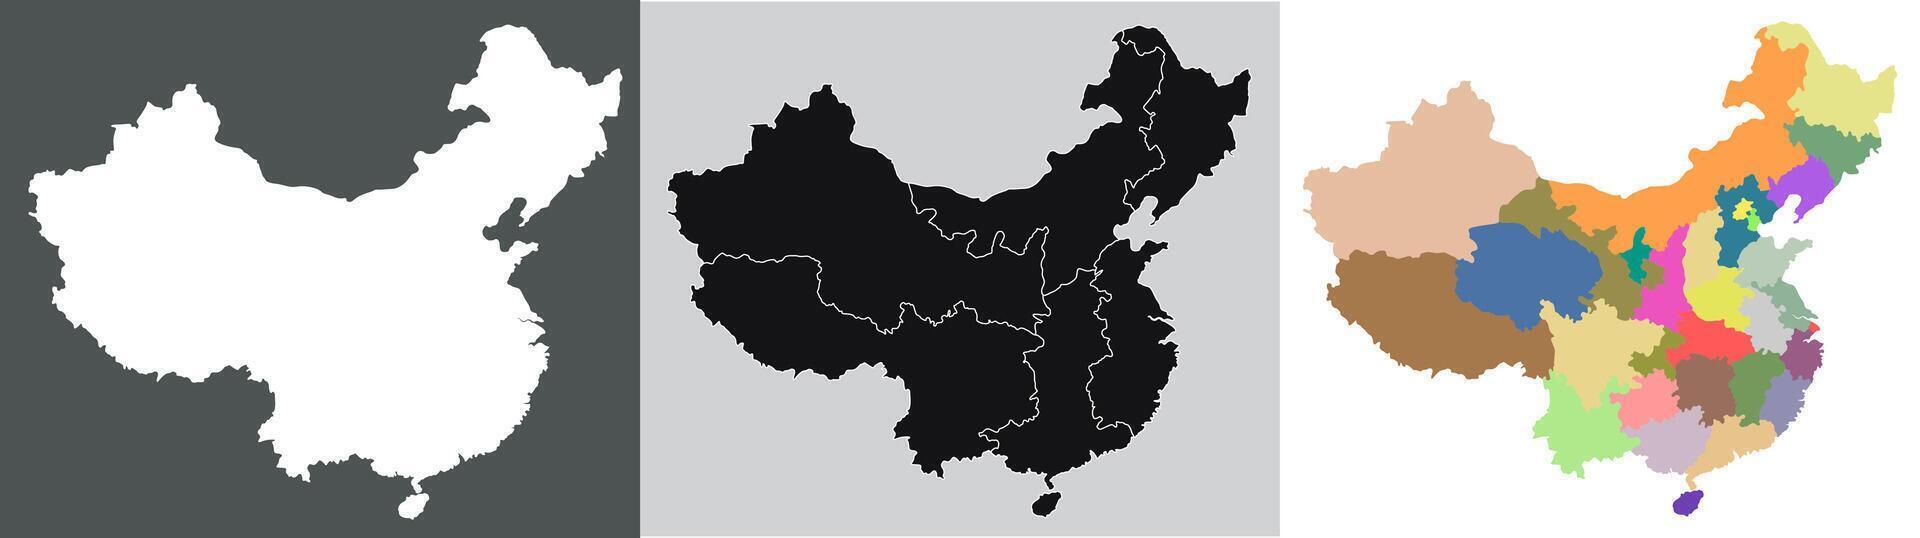 China mapa. mapa do China dentro conjunto vetor